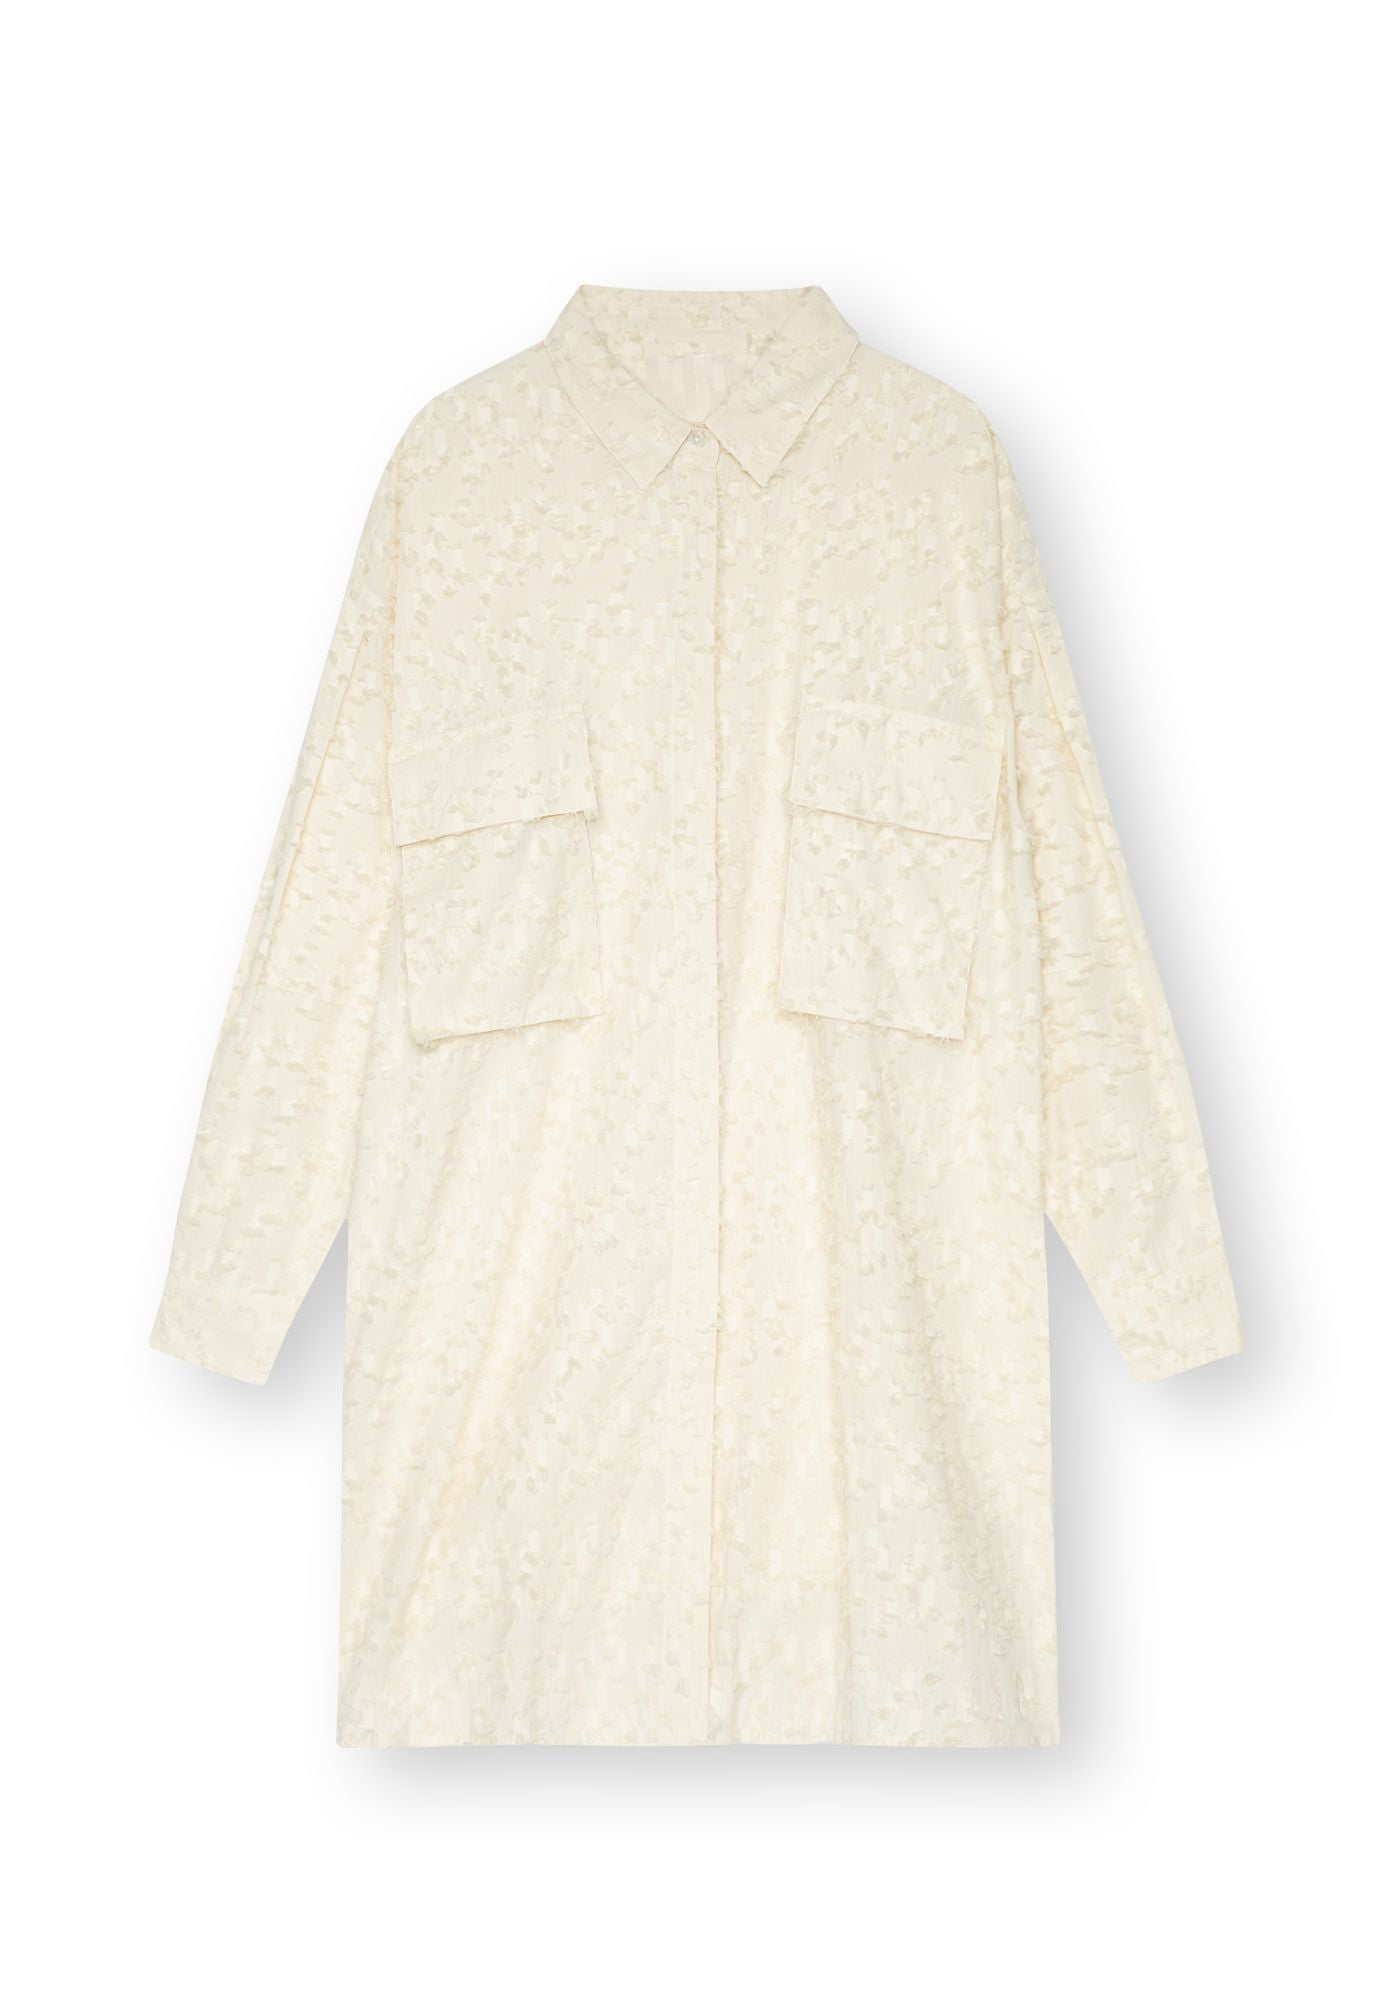 Robe chemise beige TT92 en coton 100% biologique de Thokkthokk